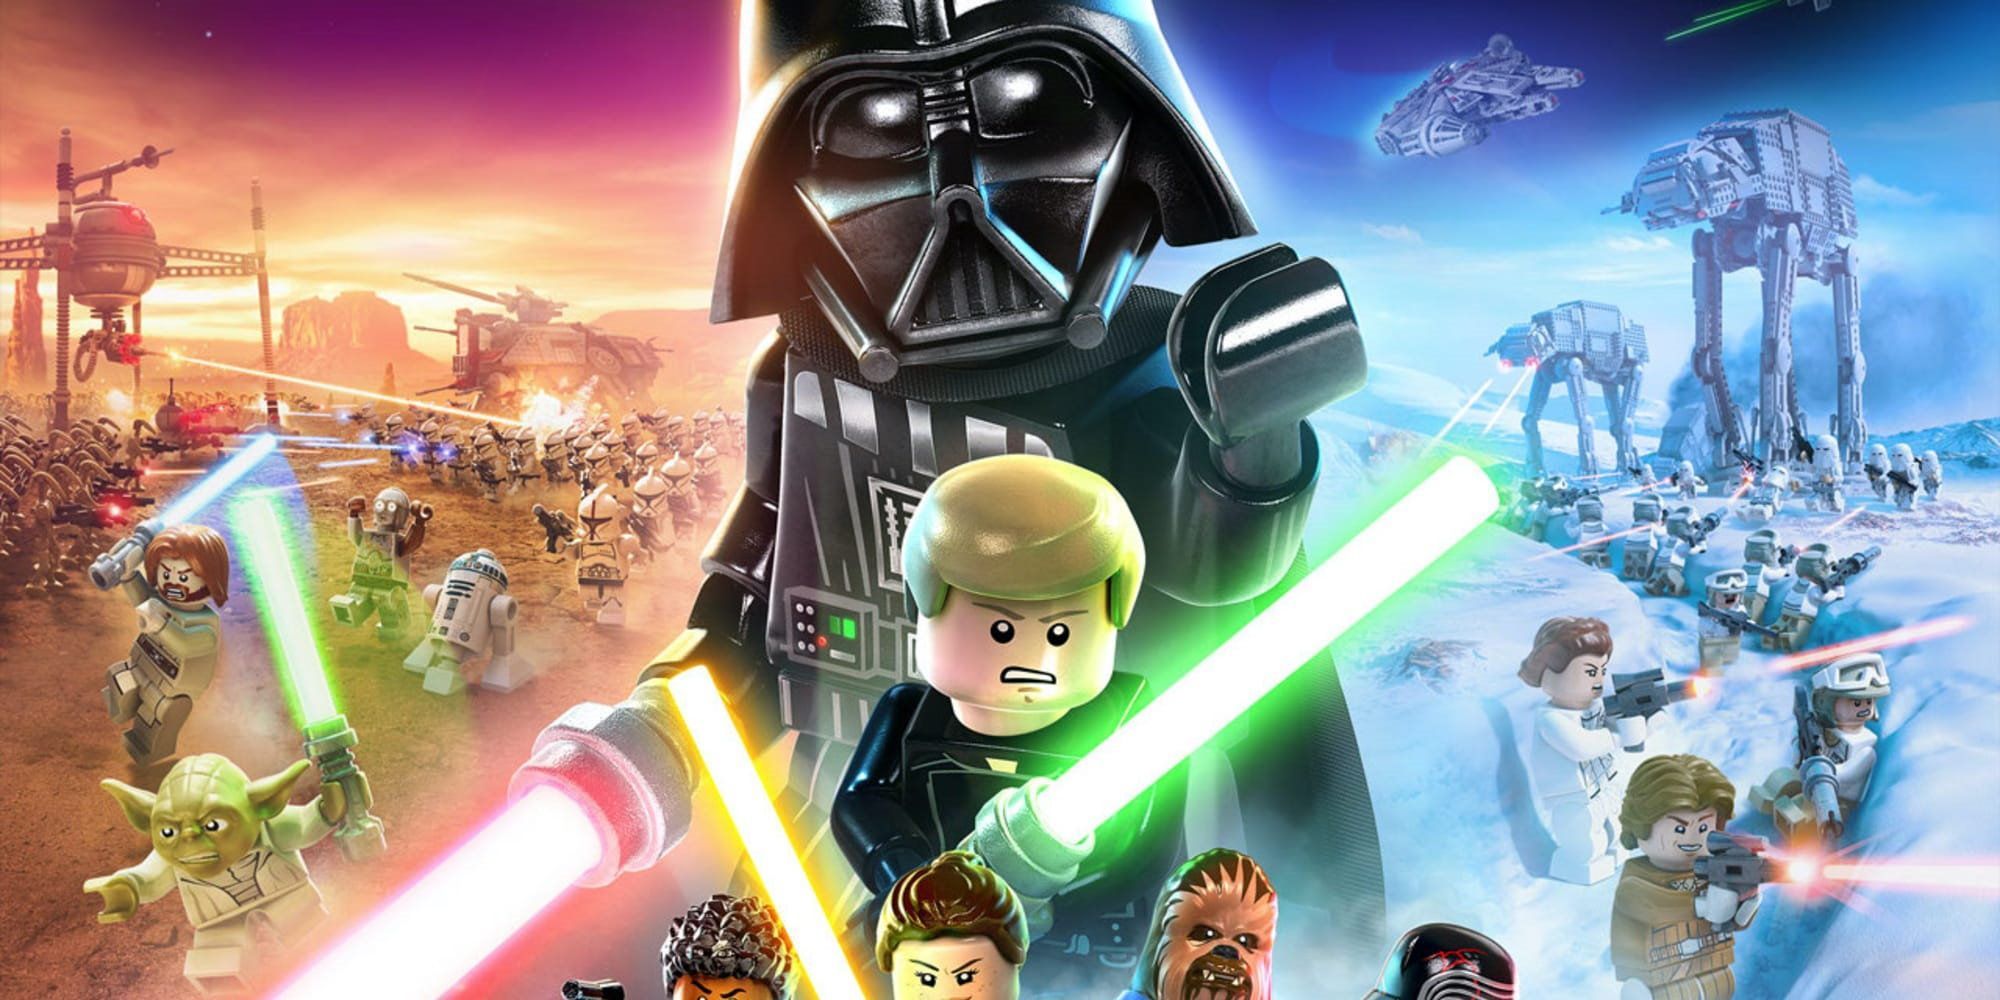 Lego Star Wars via TT Games